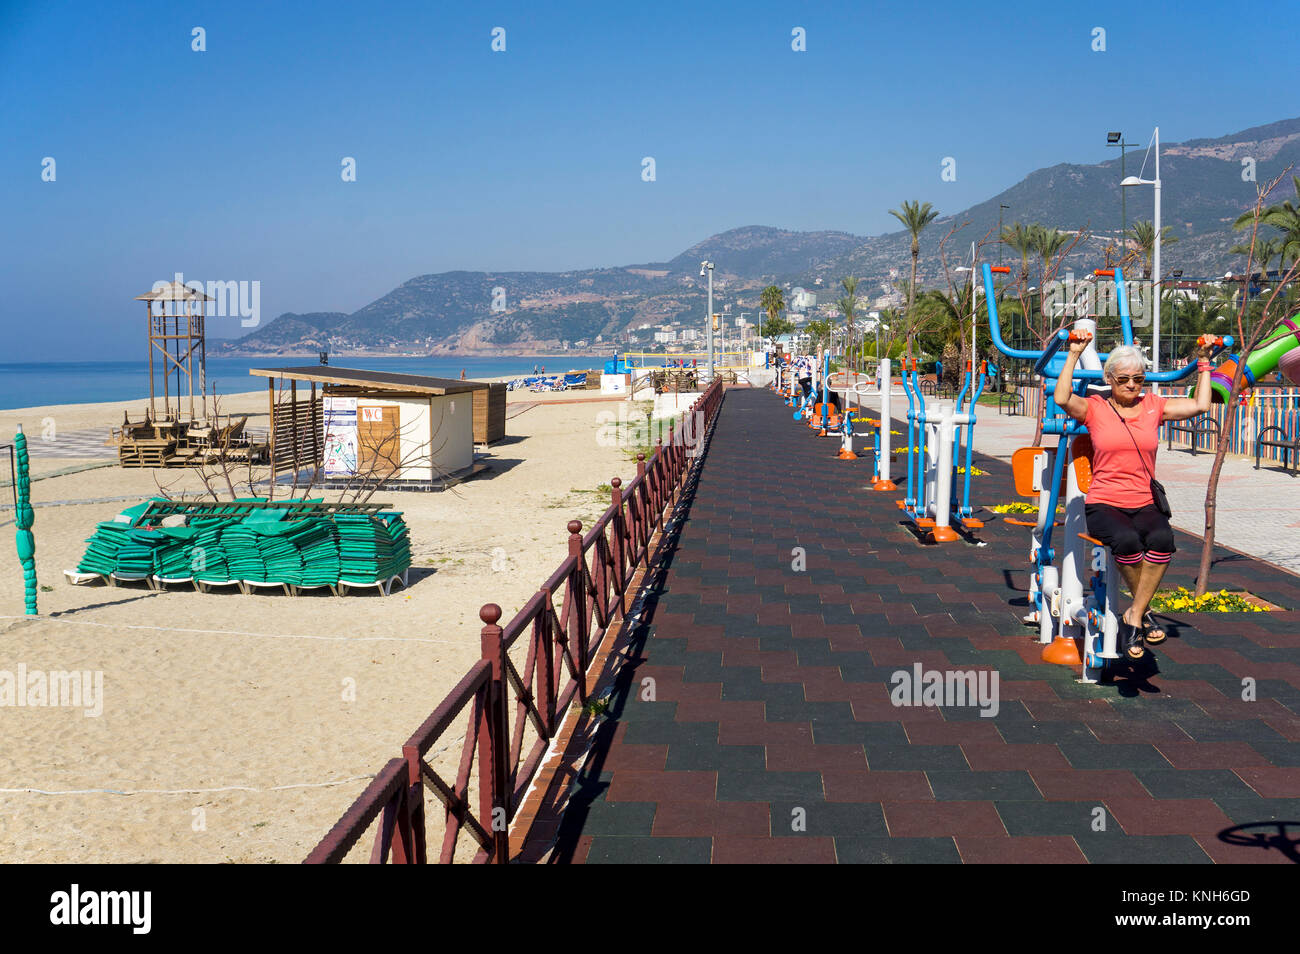 Gym facilities at the promenade of Cleoppatra beach, Alanya, turkish riviera, Turkey Stock Photo